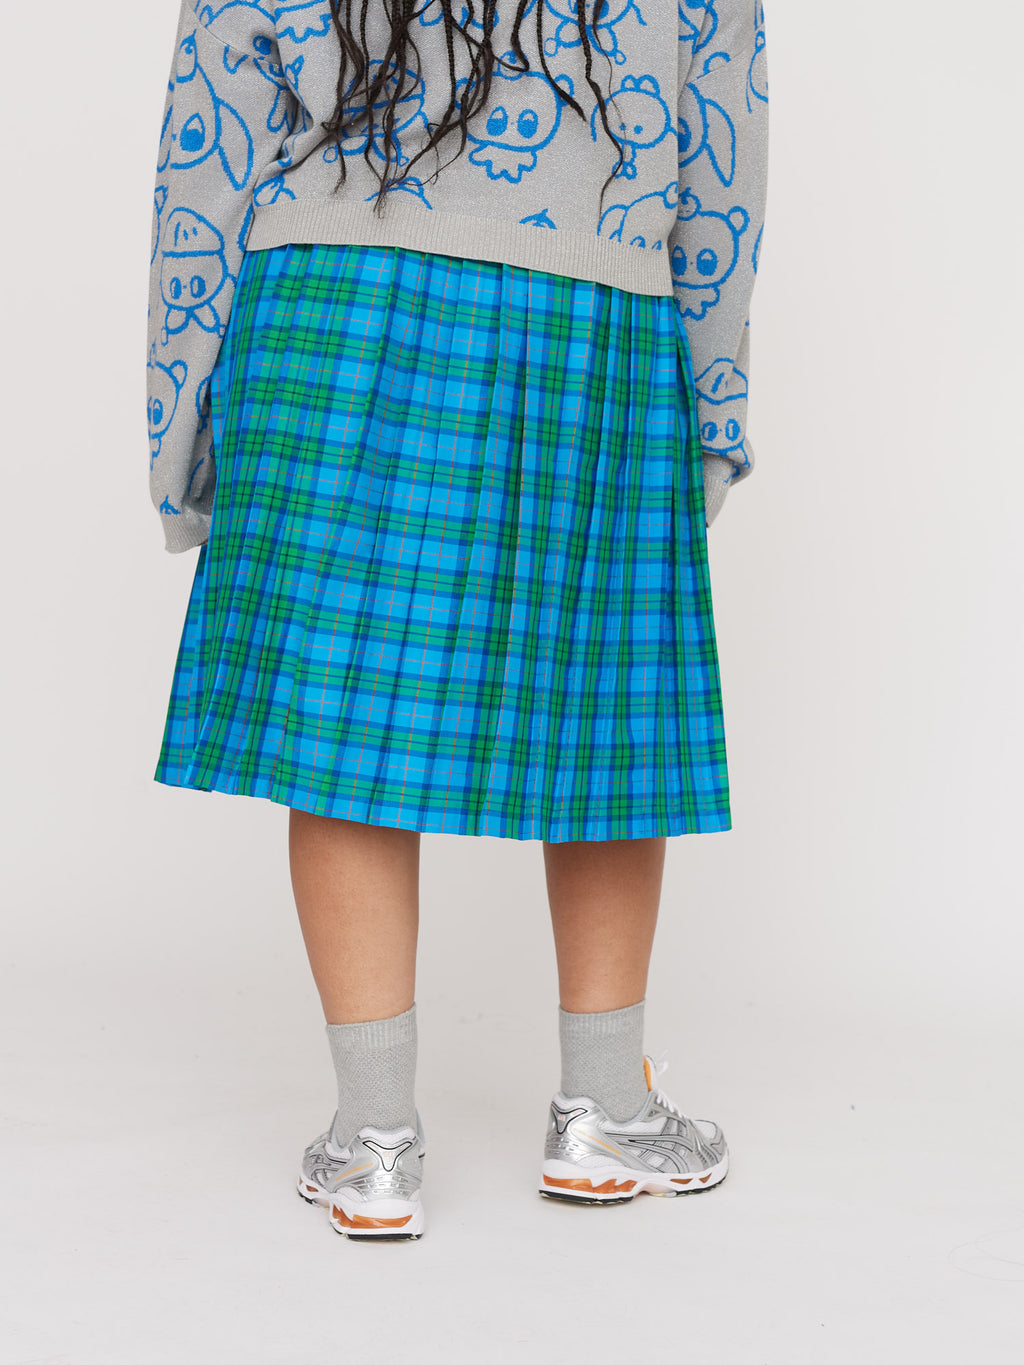 LO x Nhozagri Check Pleated Skirt